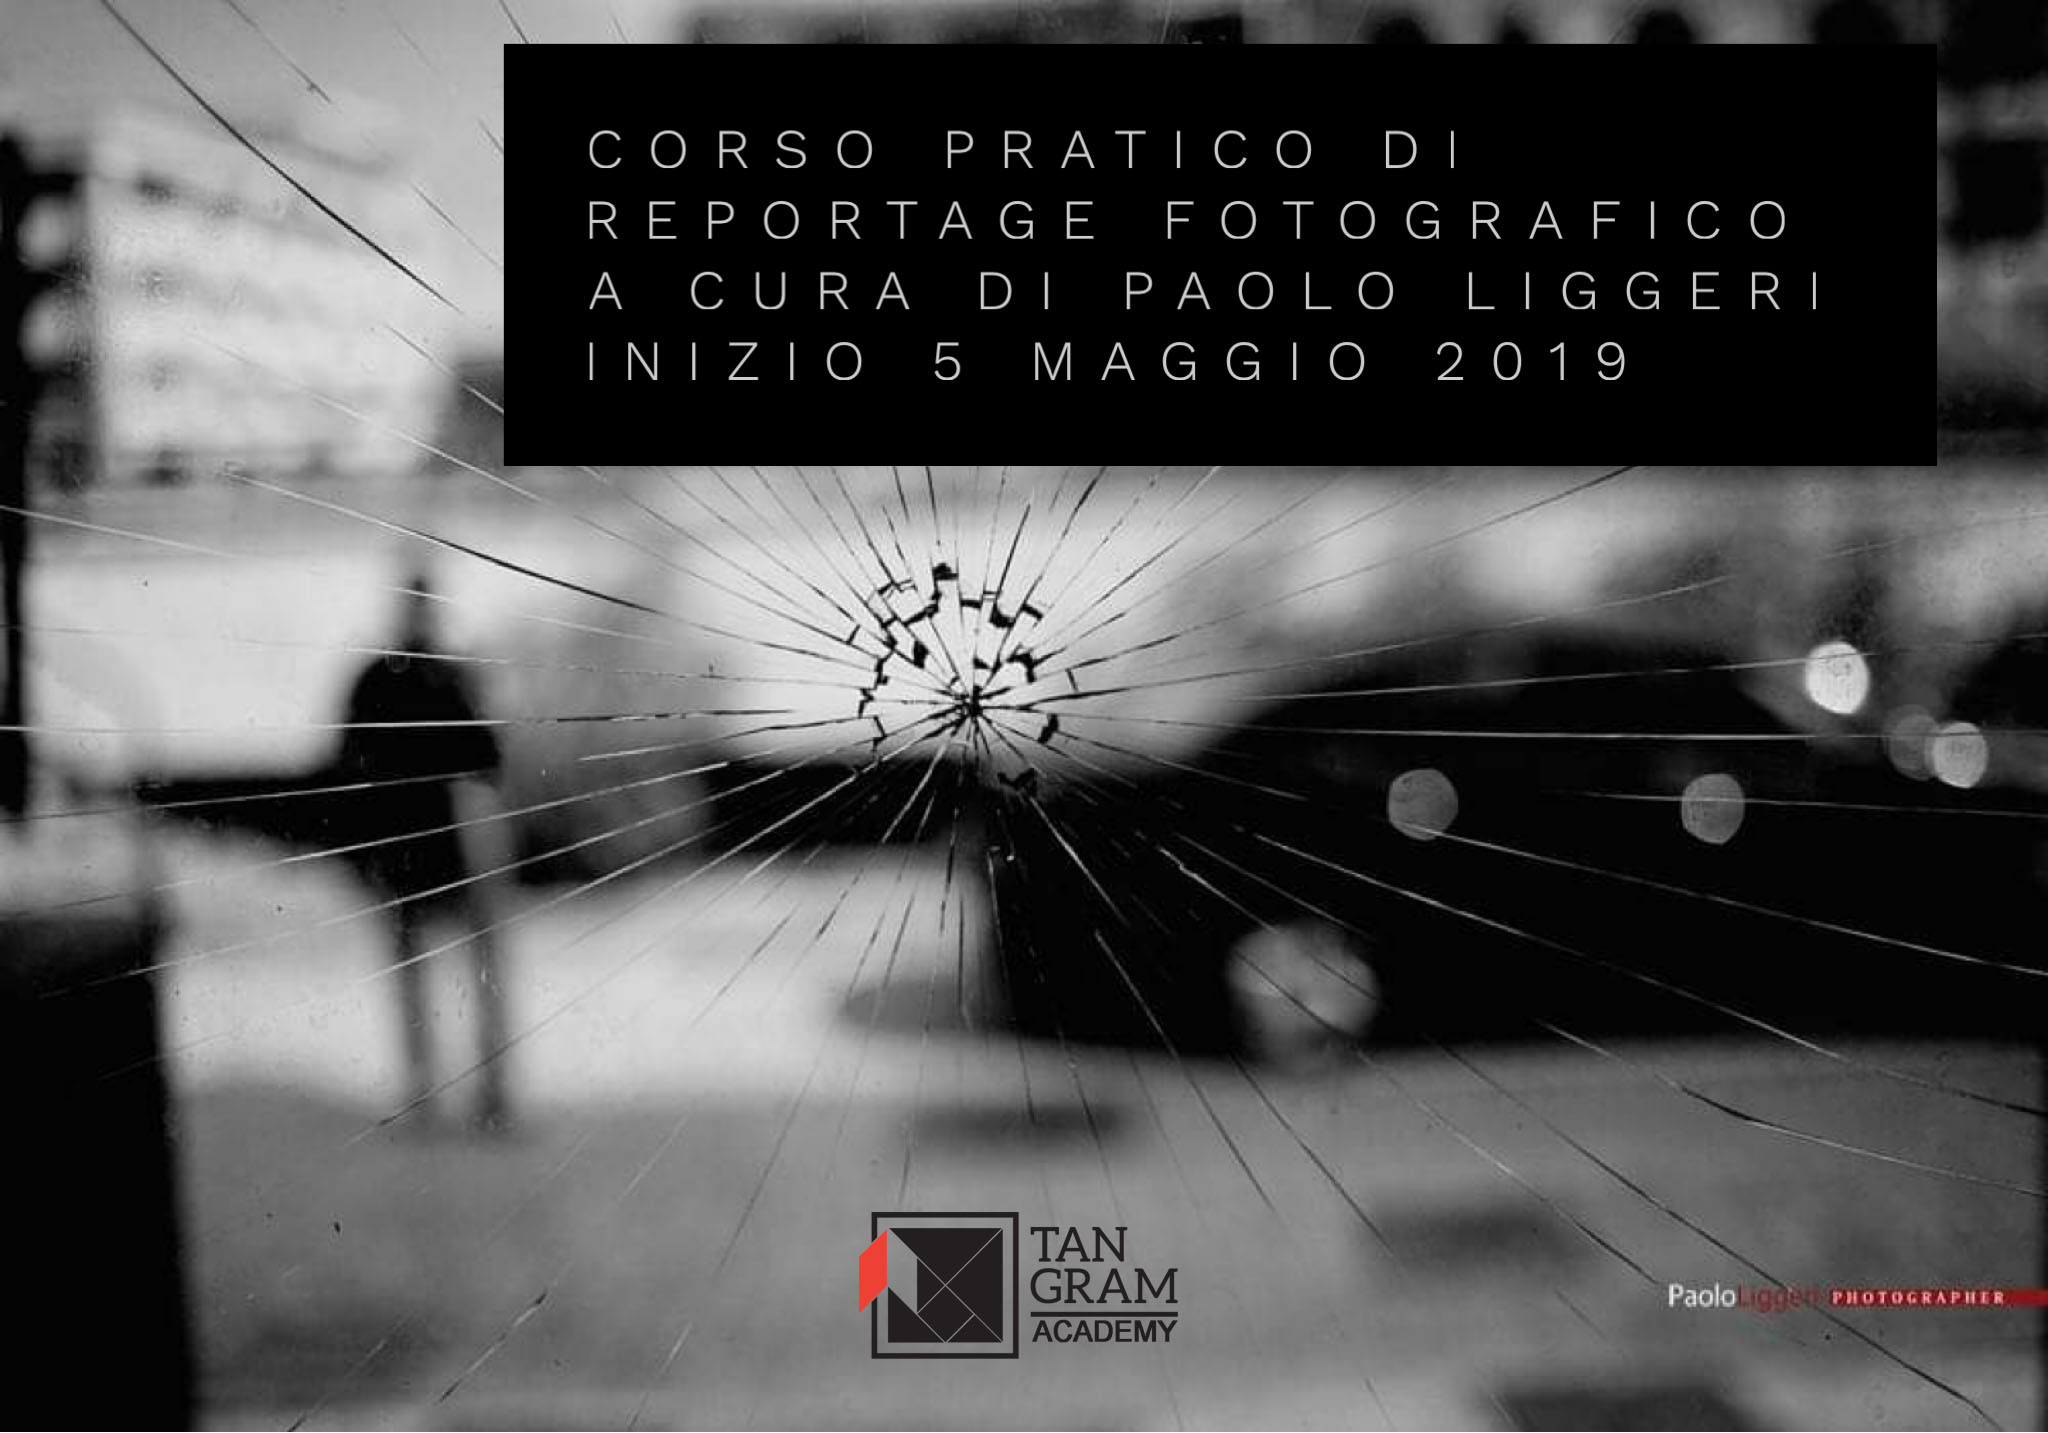 Corso pratico di reportage fotografico con Paolo Liggeri